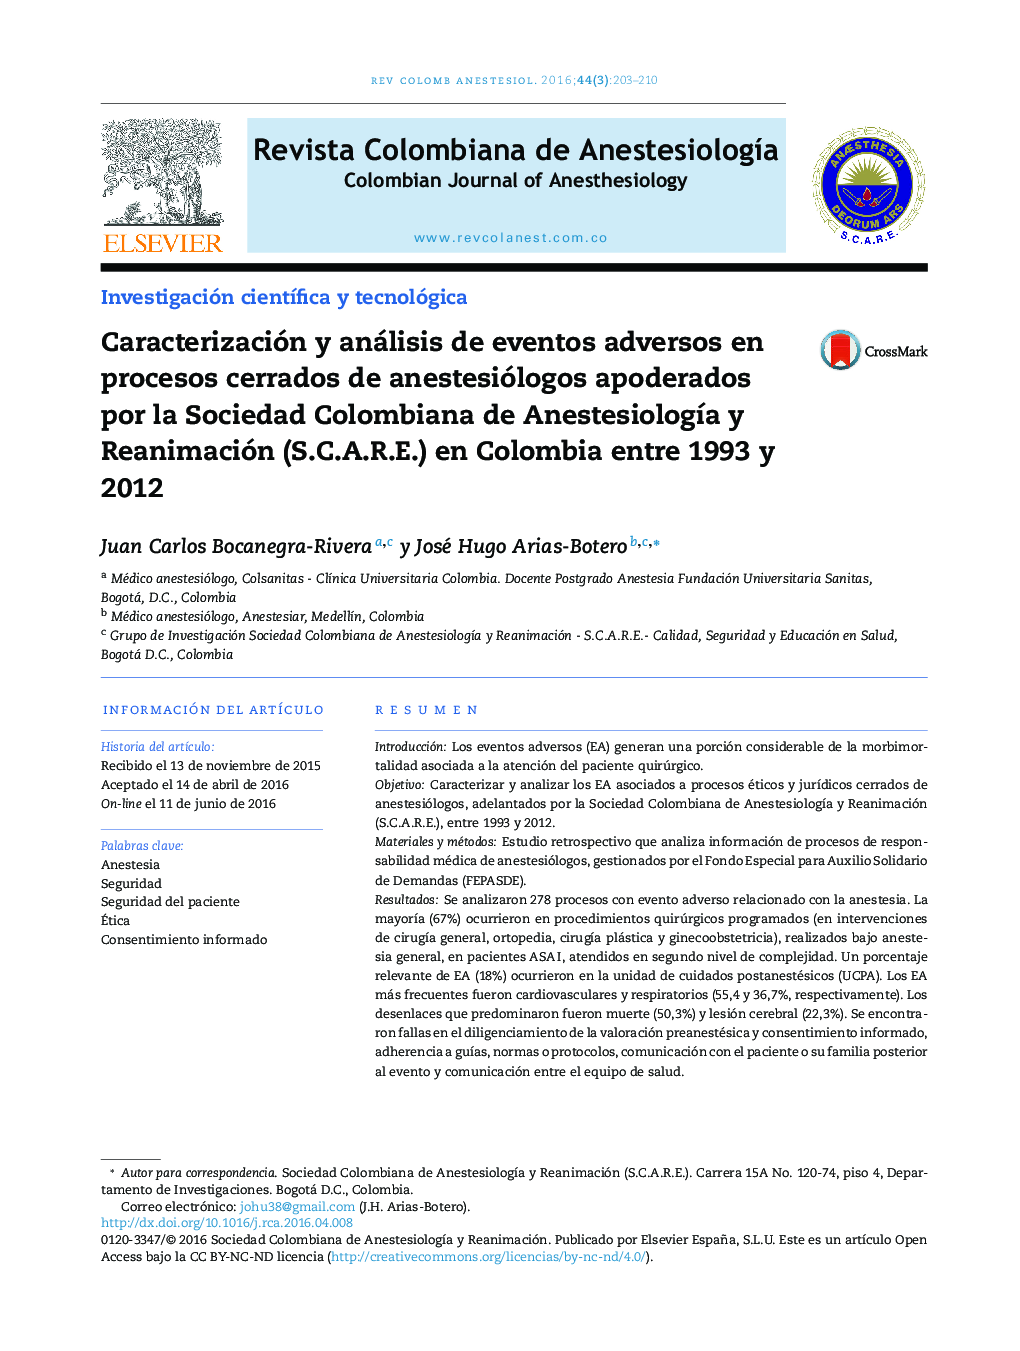 Caracterización y análisis de eventos adversos en procesos cerrados de anestesiólogos apoderados por la Sociedad Colombiana de Anestesiología y Reanimación (S.C.A.R.E.) en Colombia entre 1993 y 2012